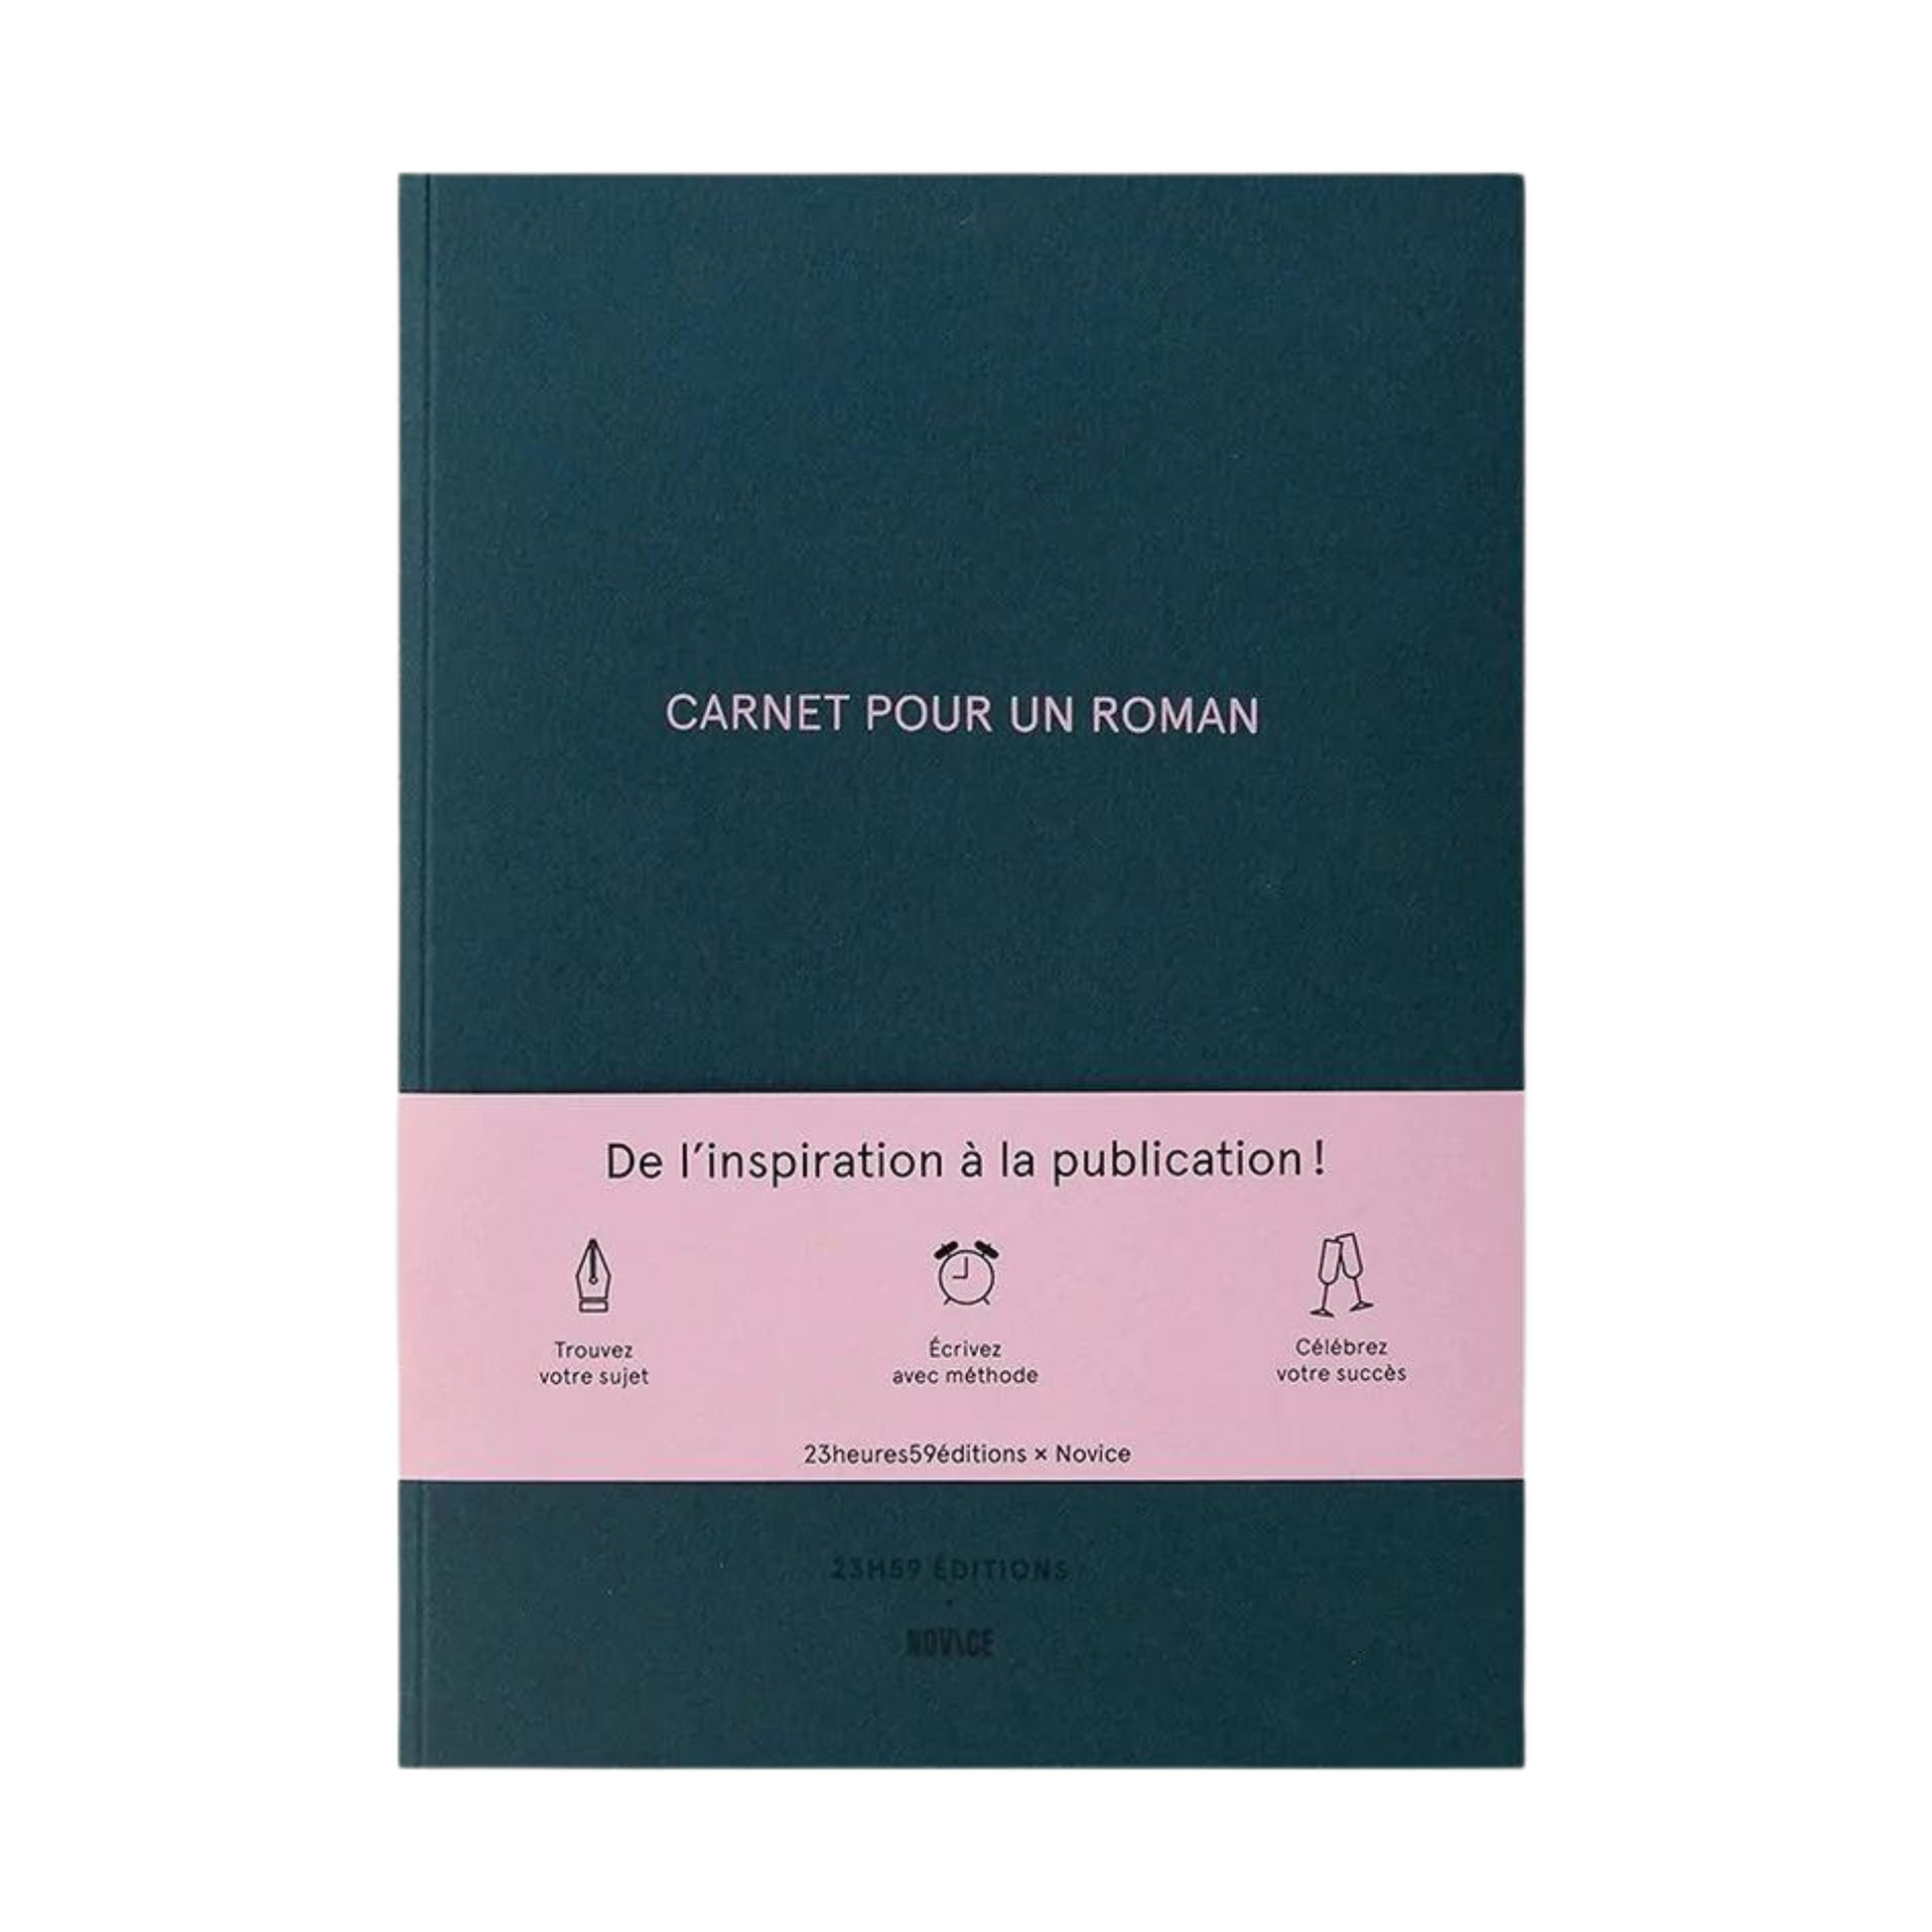 Carnet pour un Roman - 23H59 Editions